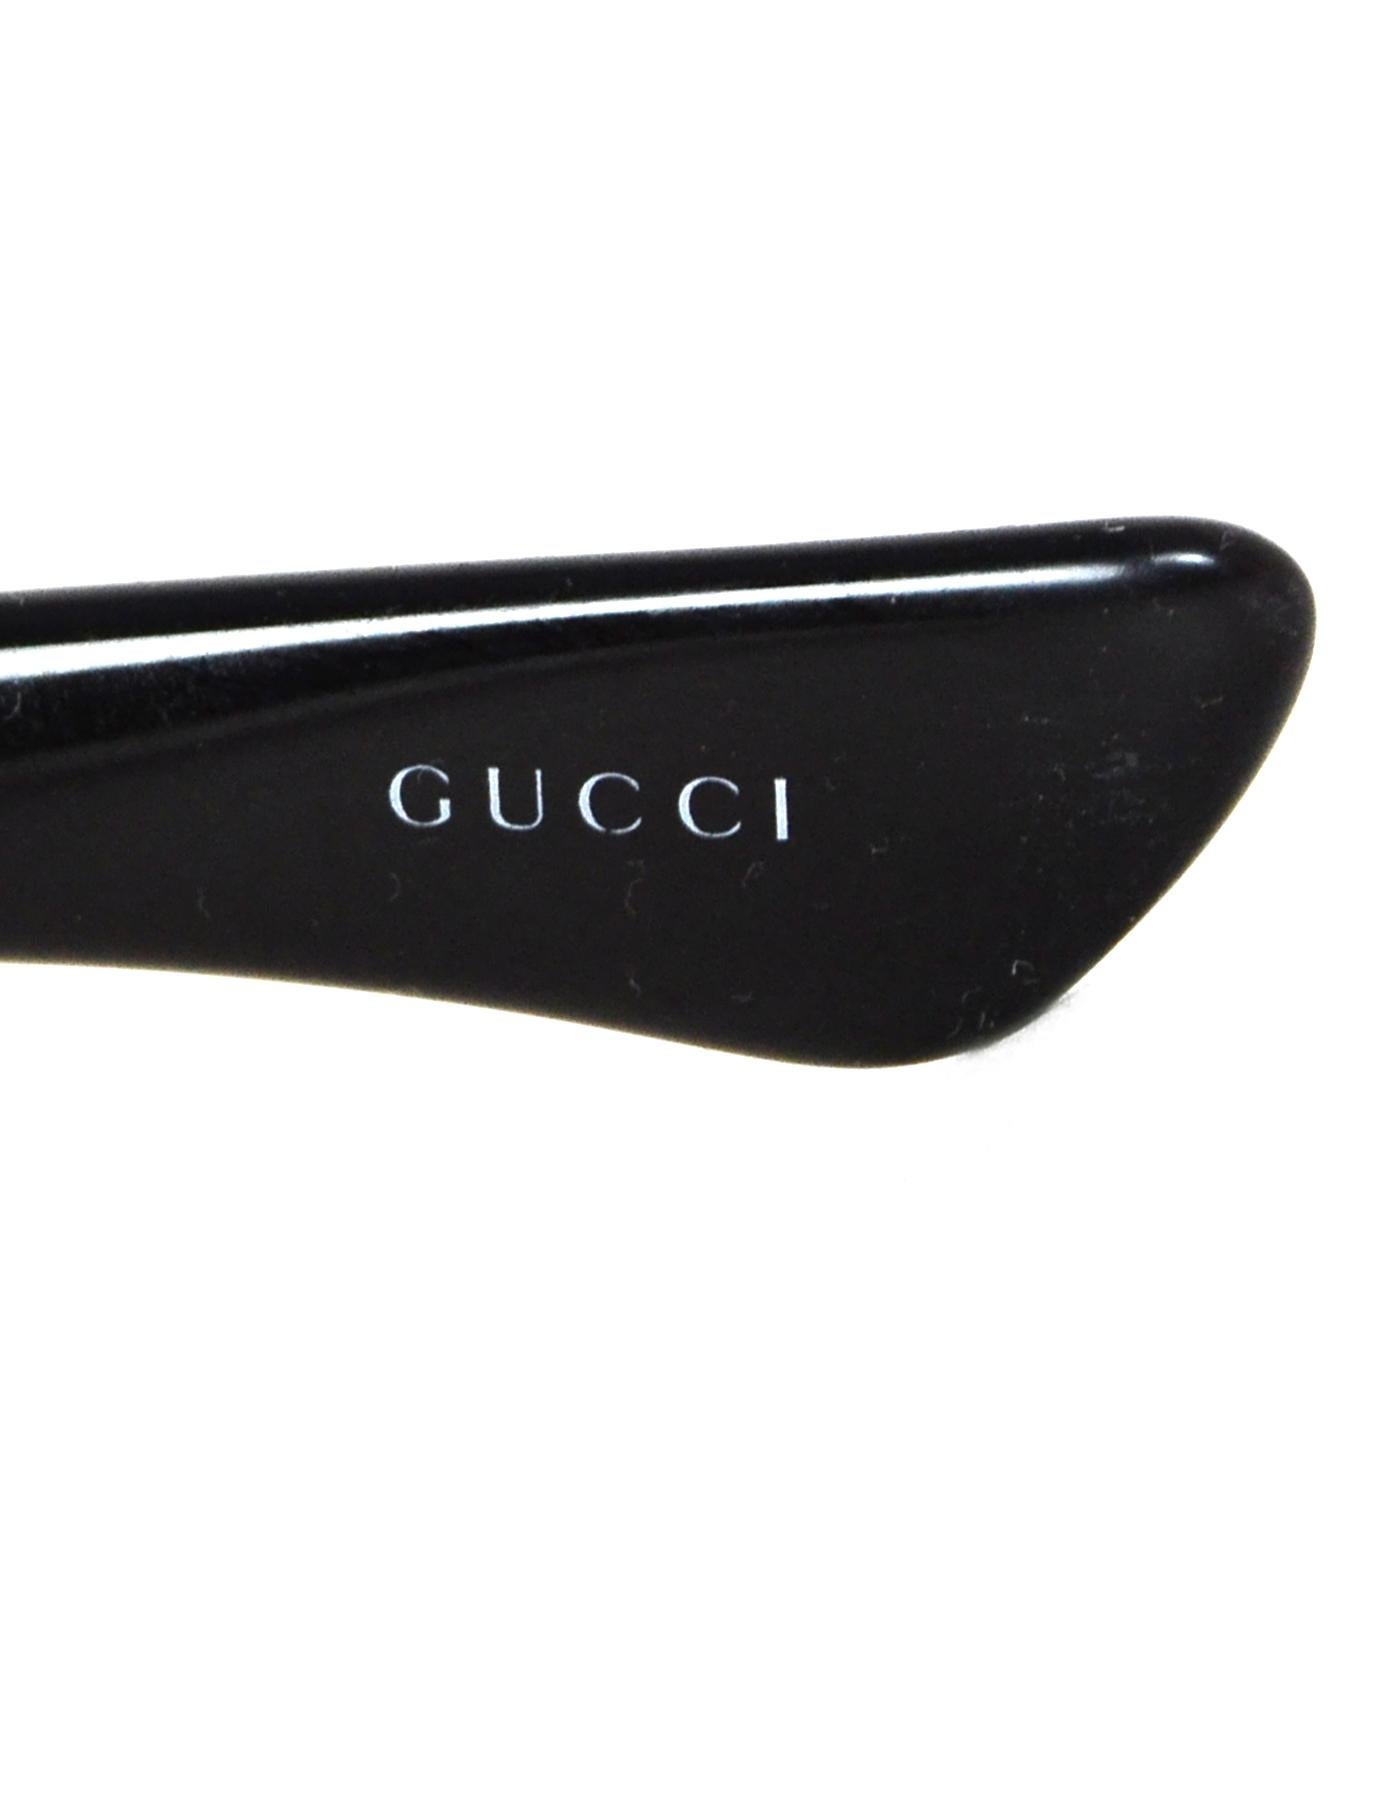 Gucci Black Sunglasses W/ Rhinestones On Arms & Case 4